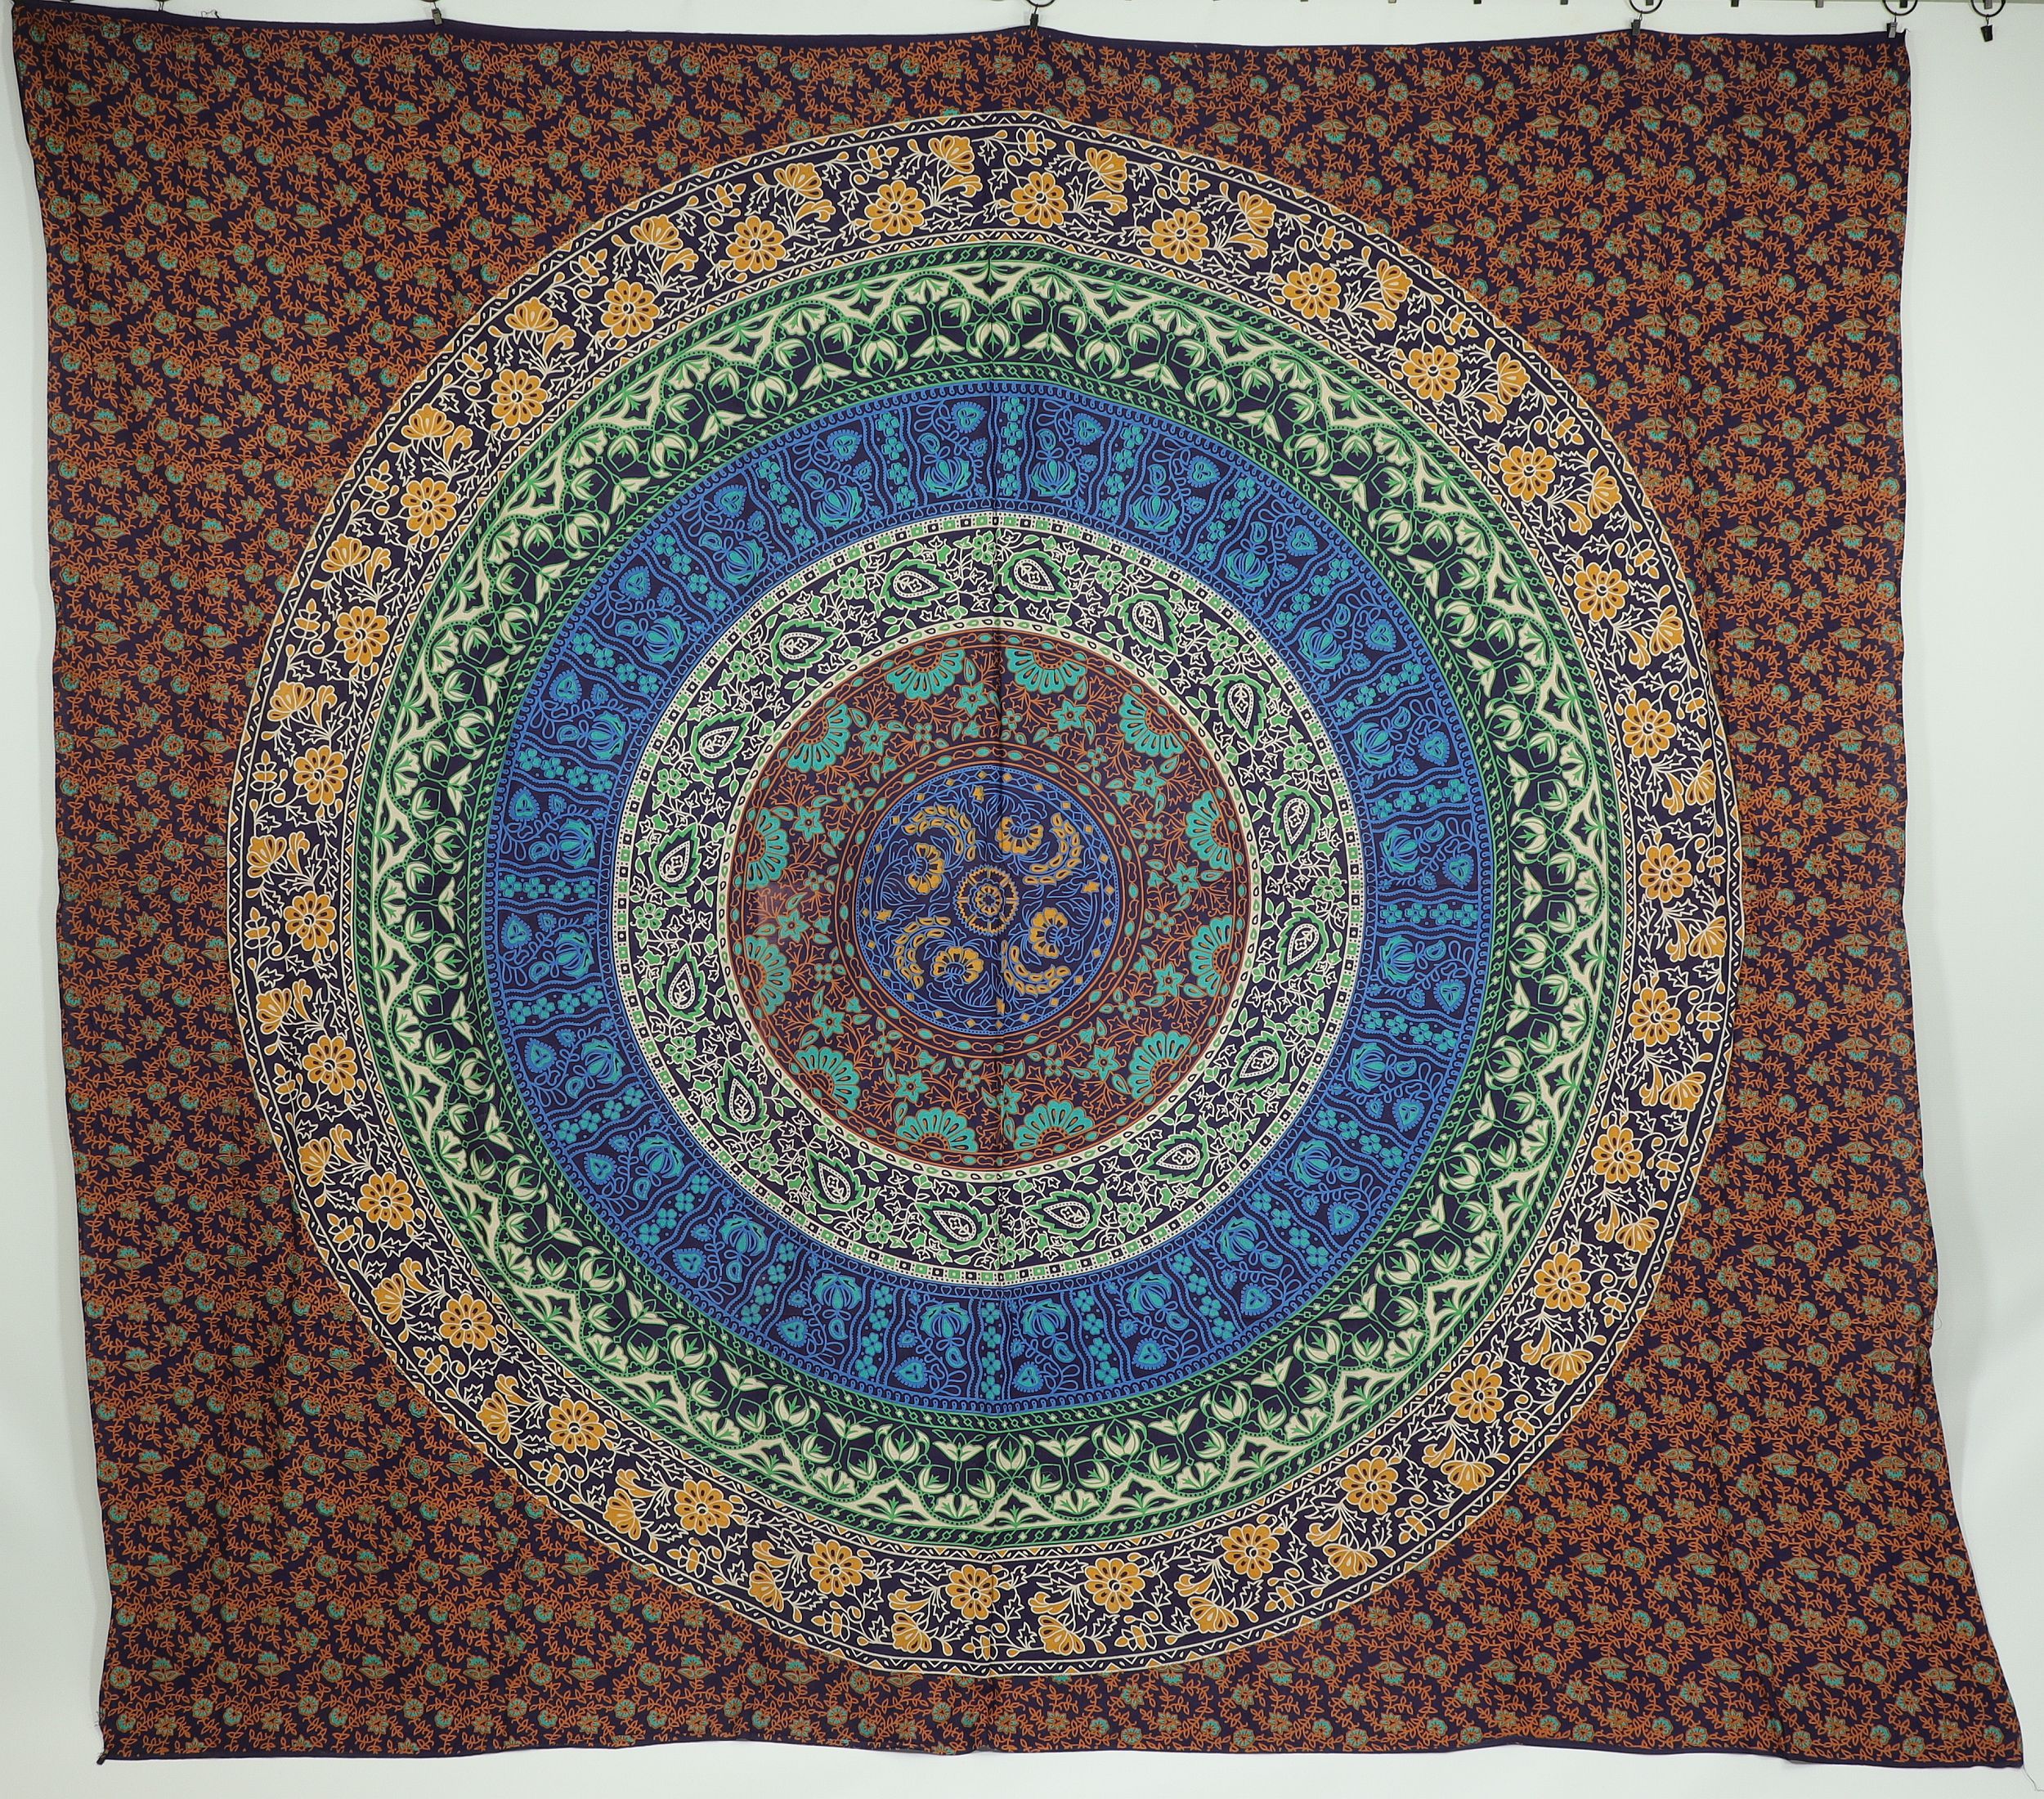 Wandtuch XXL 210x230 - Mandala Lotus Kreise - 100% Baumwolle - detailreicher indischer Druck - dekoratives Tuch, Wandbild, Tagesdecke, Bedcover, Vorhang, Picknick-Decke, Strandtuch